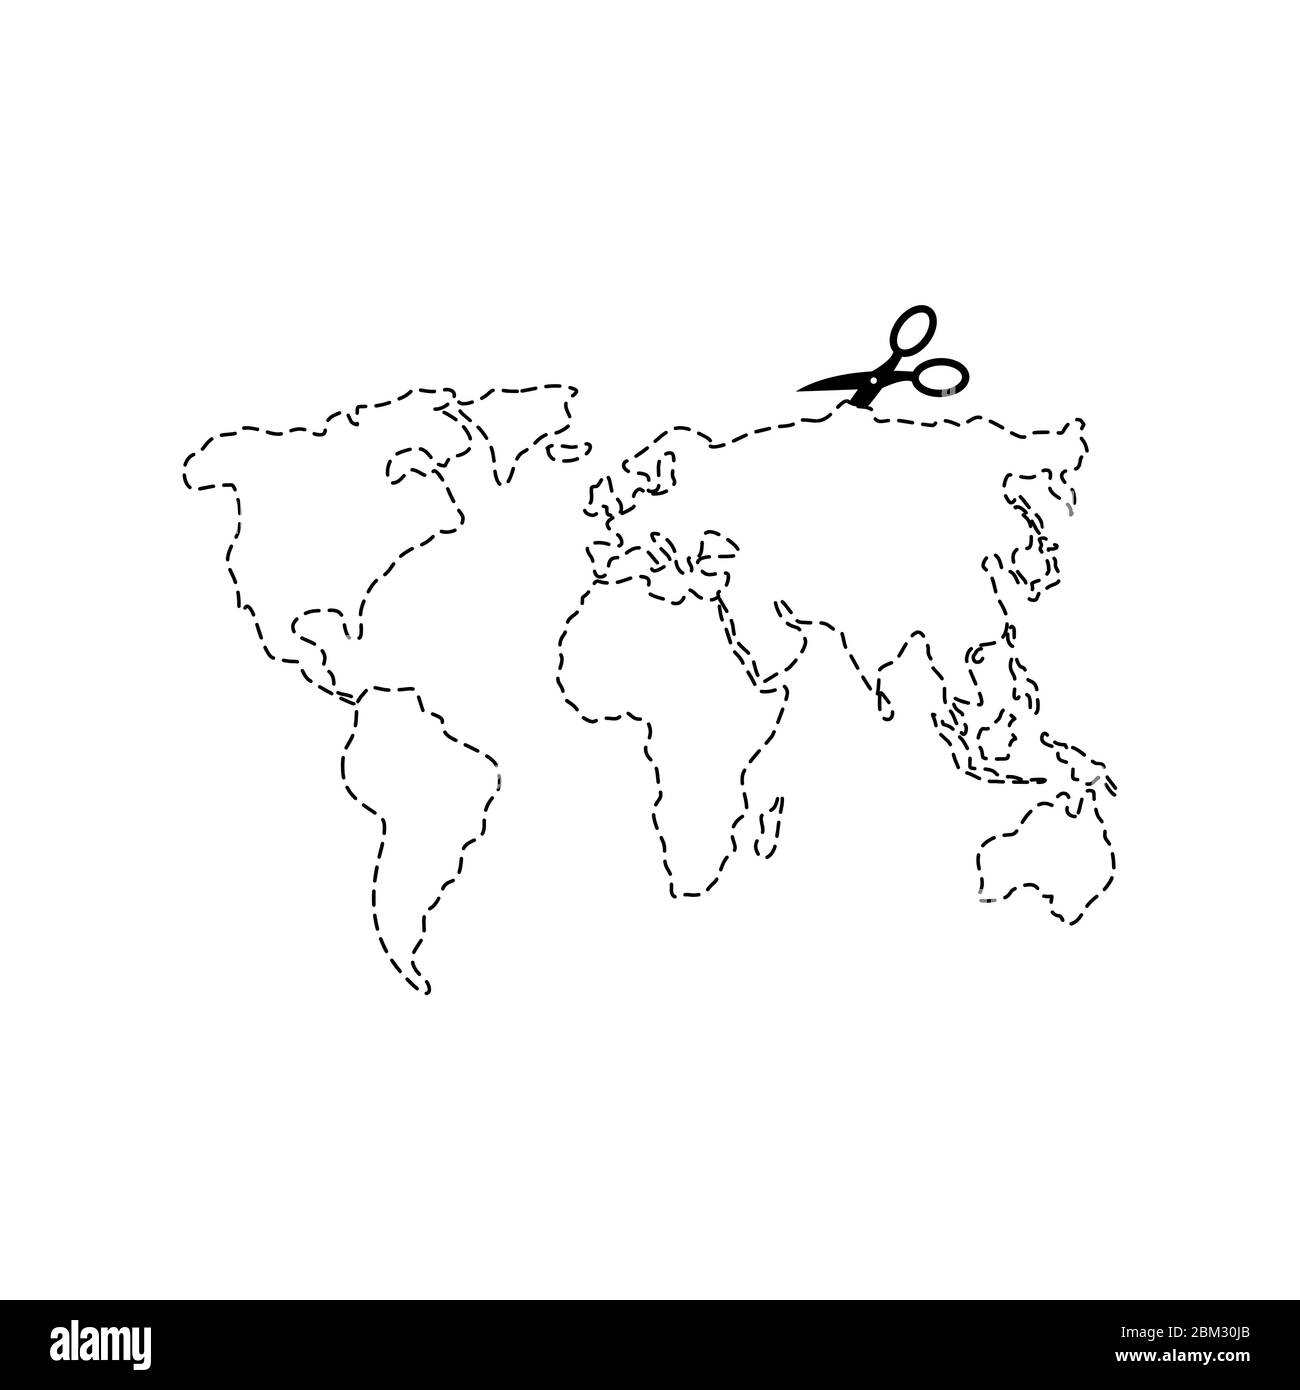 Schere Schnitt Karte Welt Vorlage. Gestrichelte Linie Kontinente des Planeten Erde. vektor-Illustration Stock Vektor